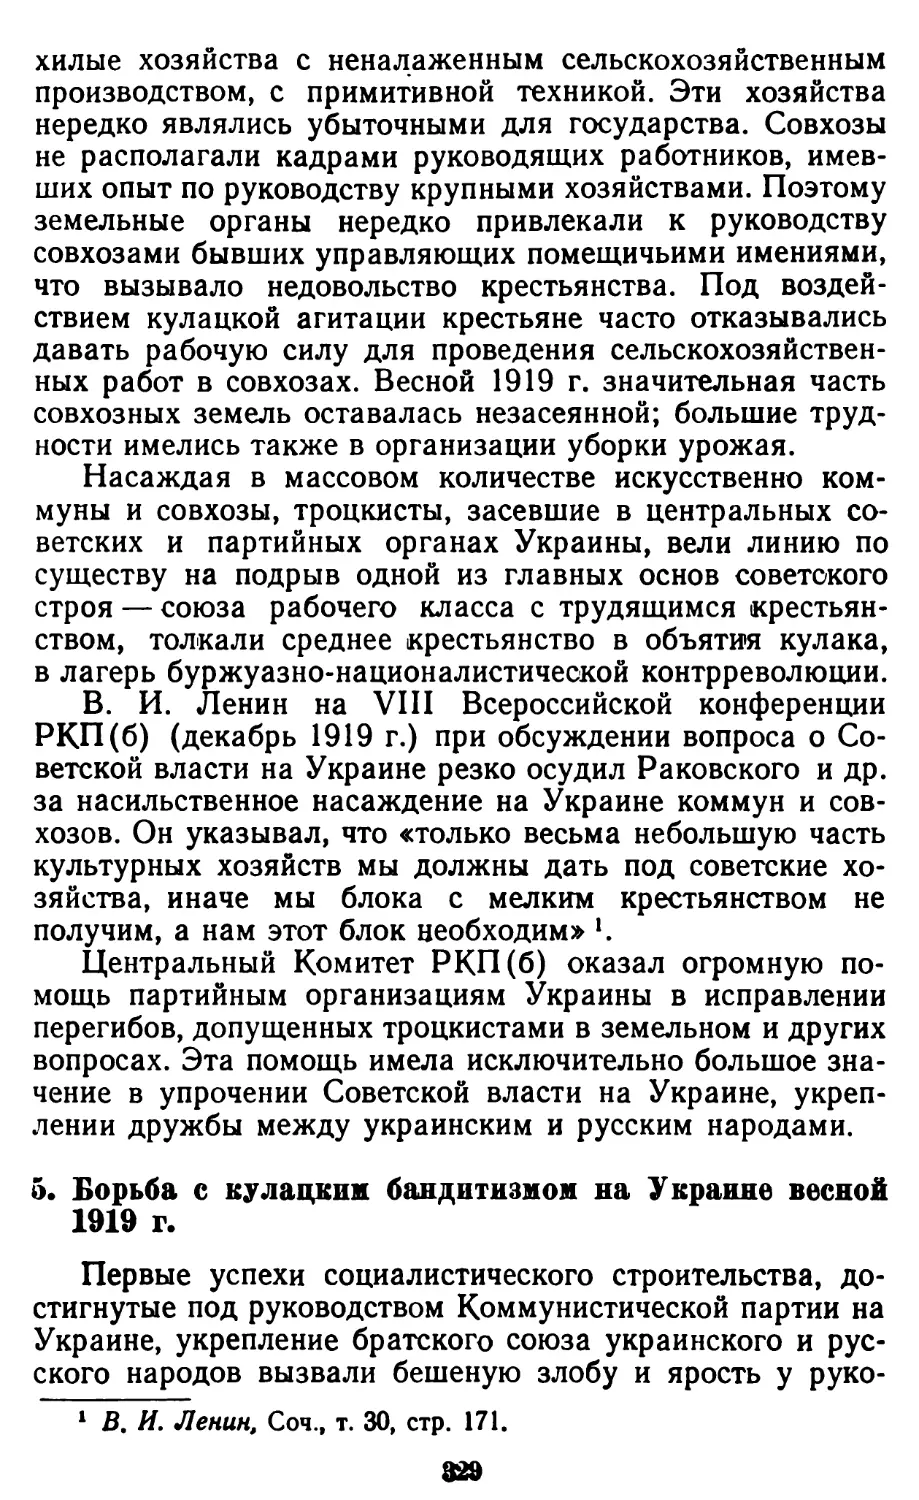 5. Борьба с кулацким бандитизмом на Украине весной 1919 г